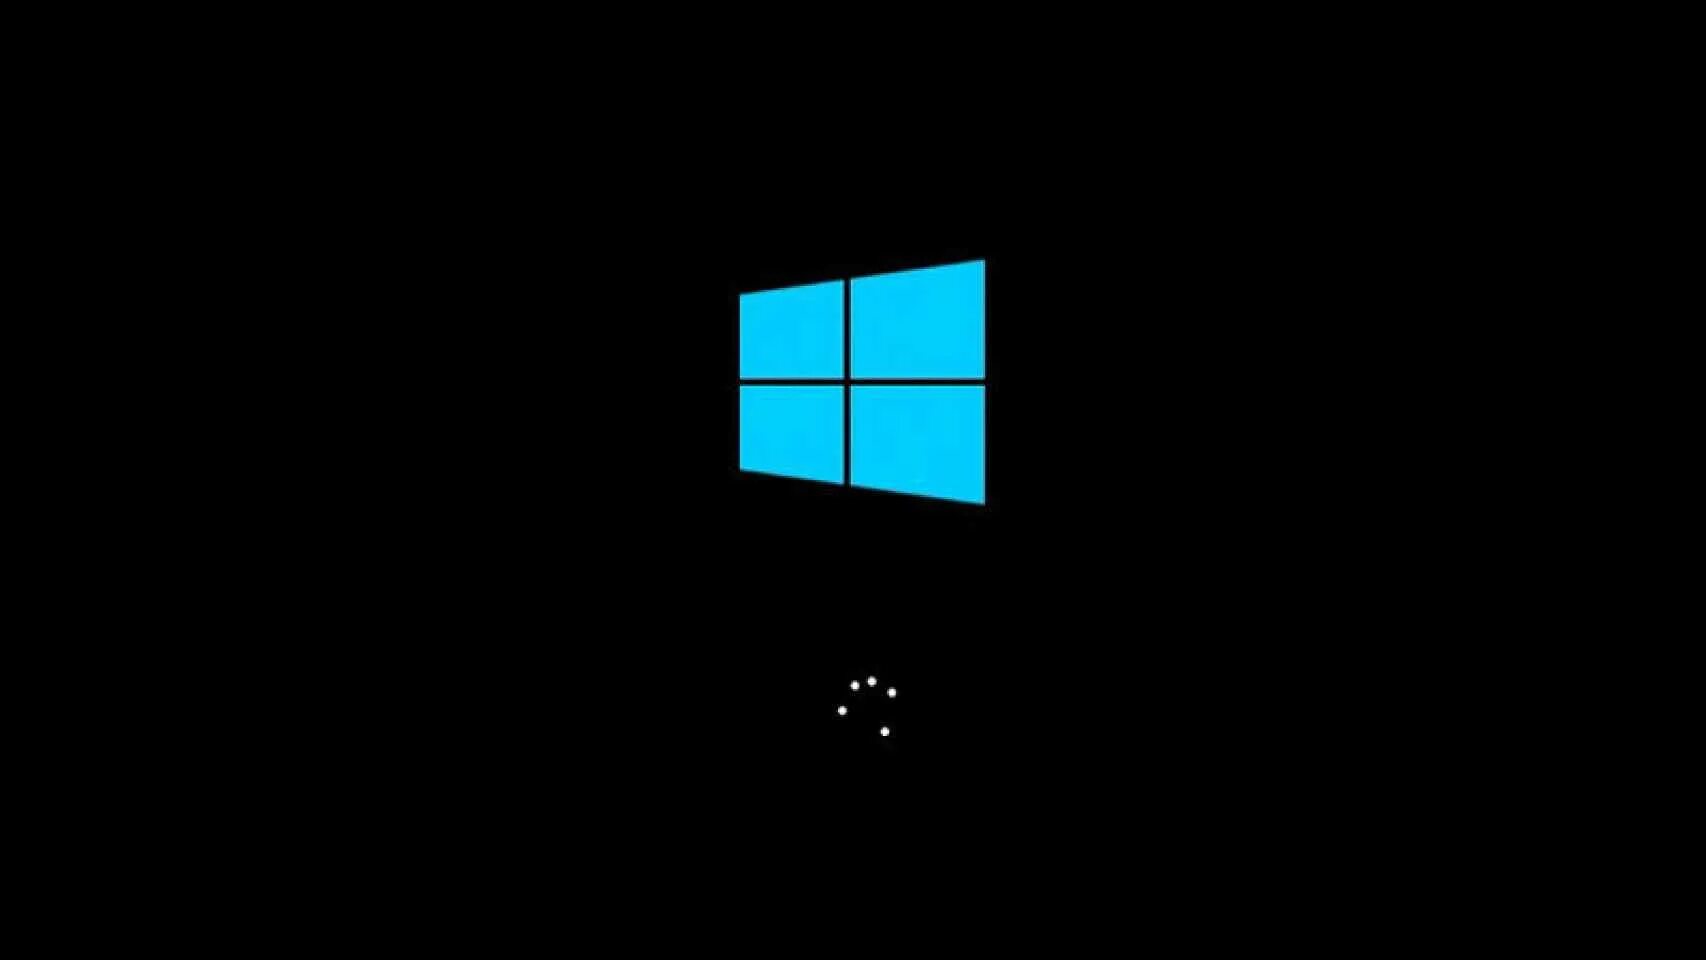 Load windows 10. Черный экран виндовс 10. Загрузочный экран виндовс 10. Запуск виндовс 11. Виндовс 8.1 загрузка.